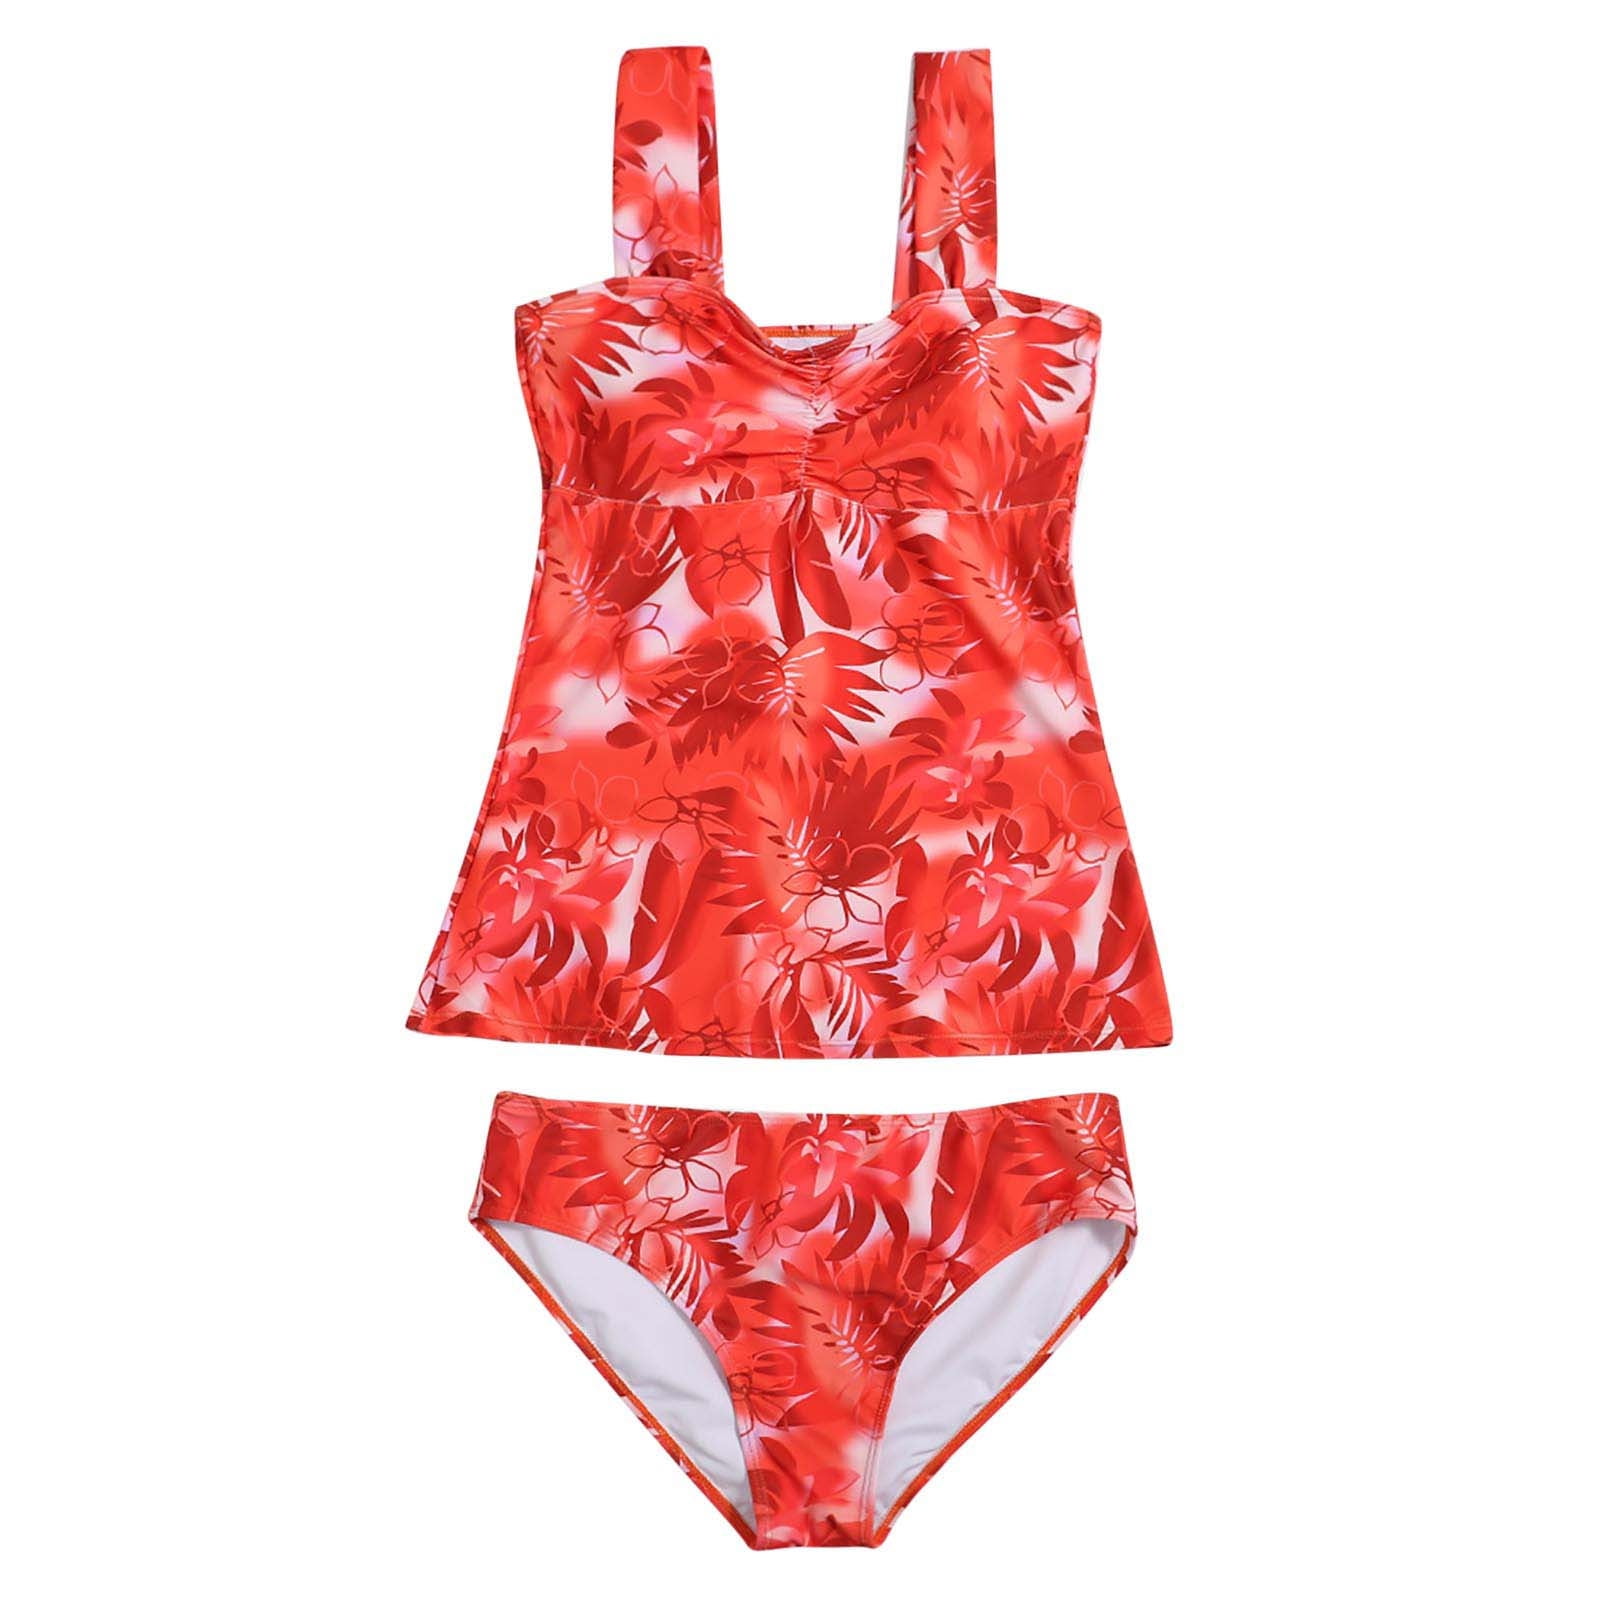 VSSSJ Tankini Swimsuit for Women Twist Front Two Piece Bathing Suits ...